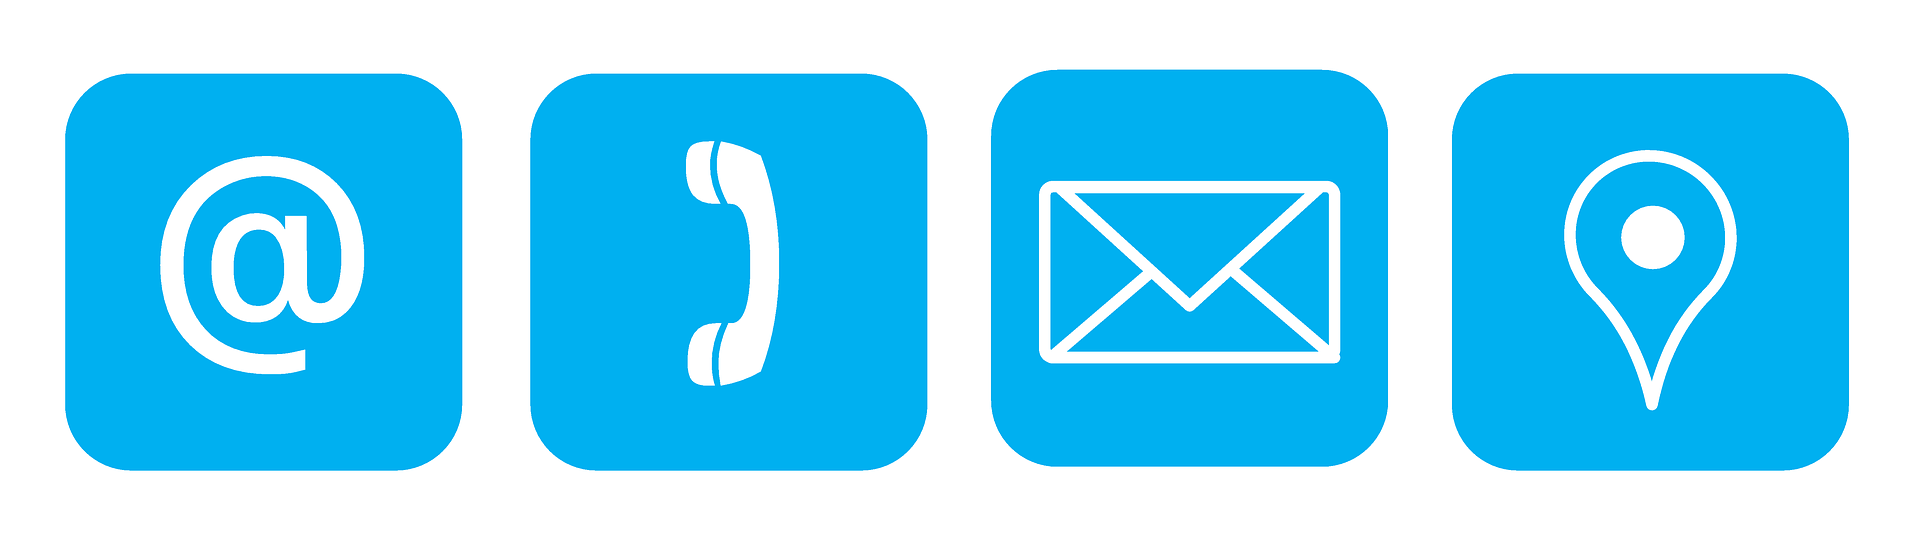 Białe ikony na niebieskim tle: emaila, telefonu, poczty i lokalizacji